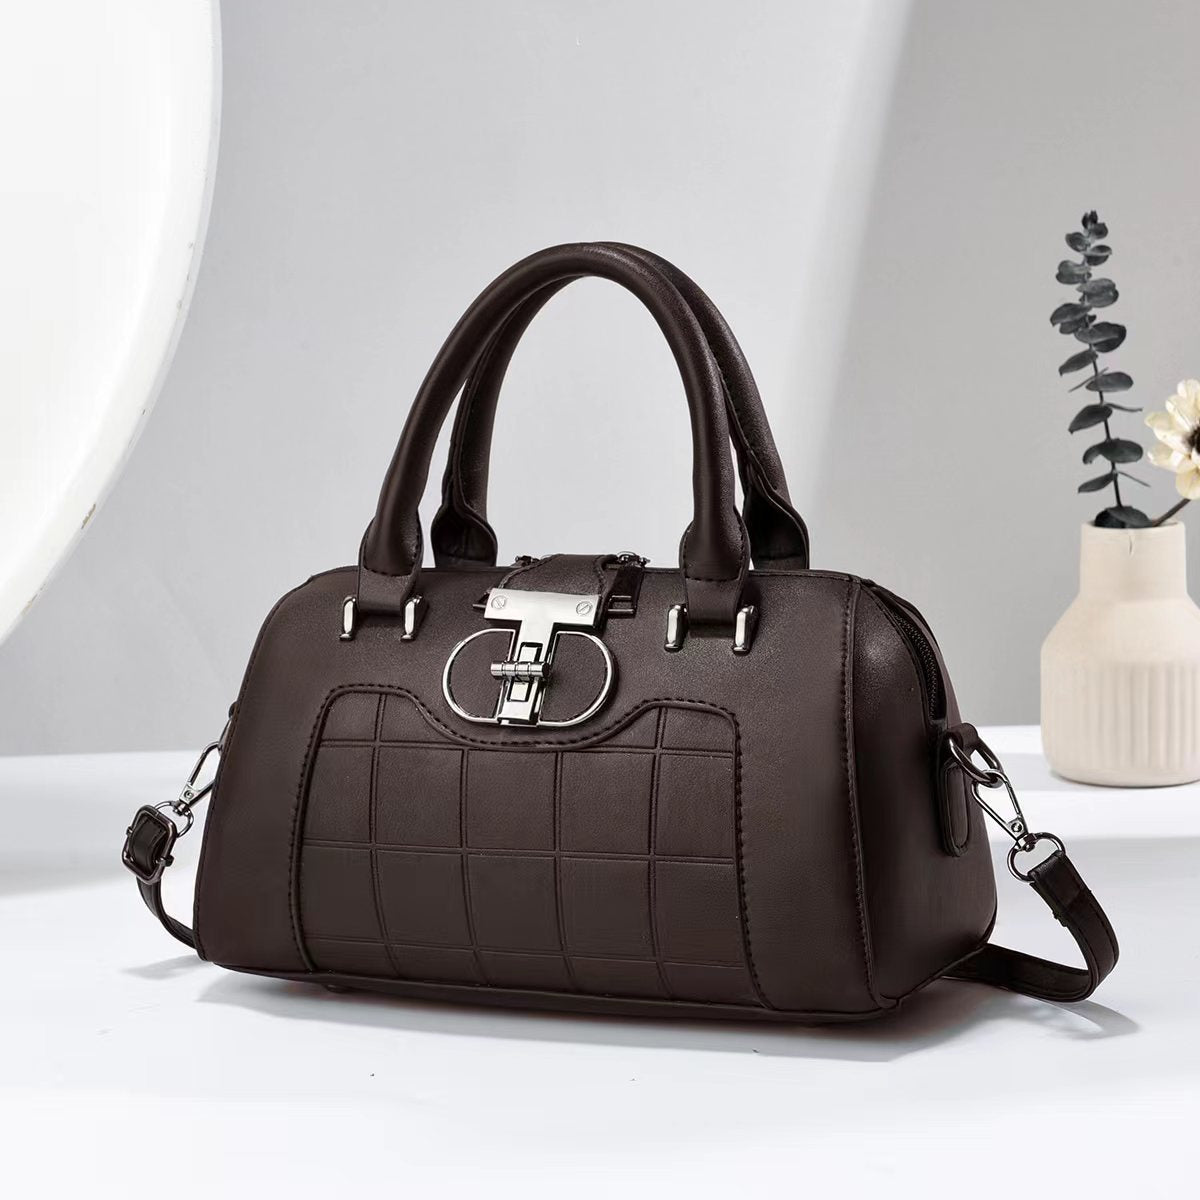 Attractive simple and versatile single shoulder crossbody handbag